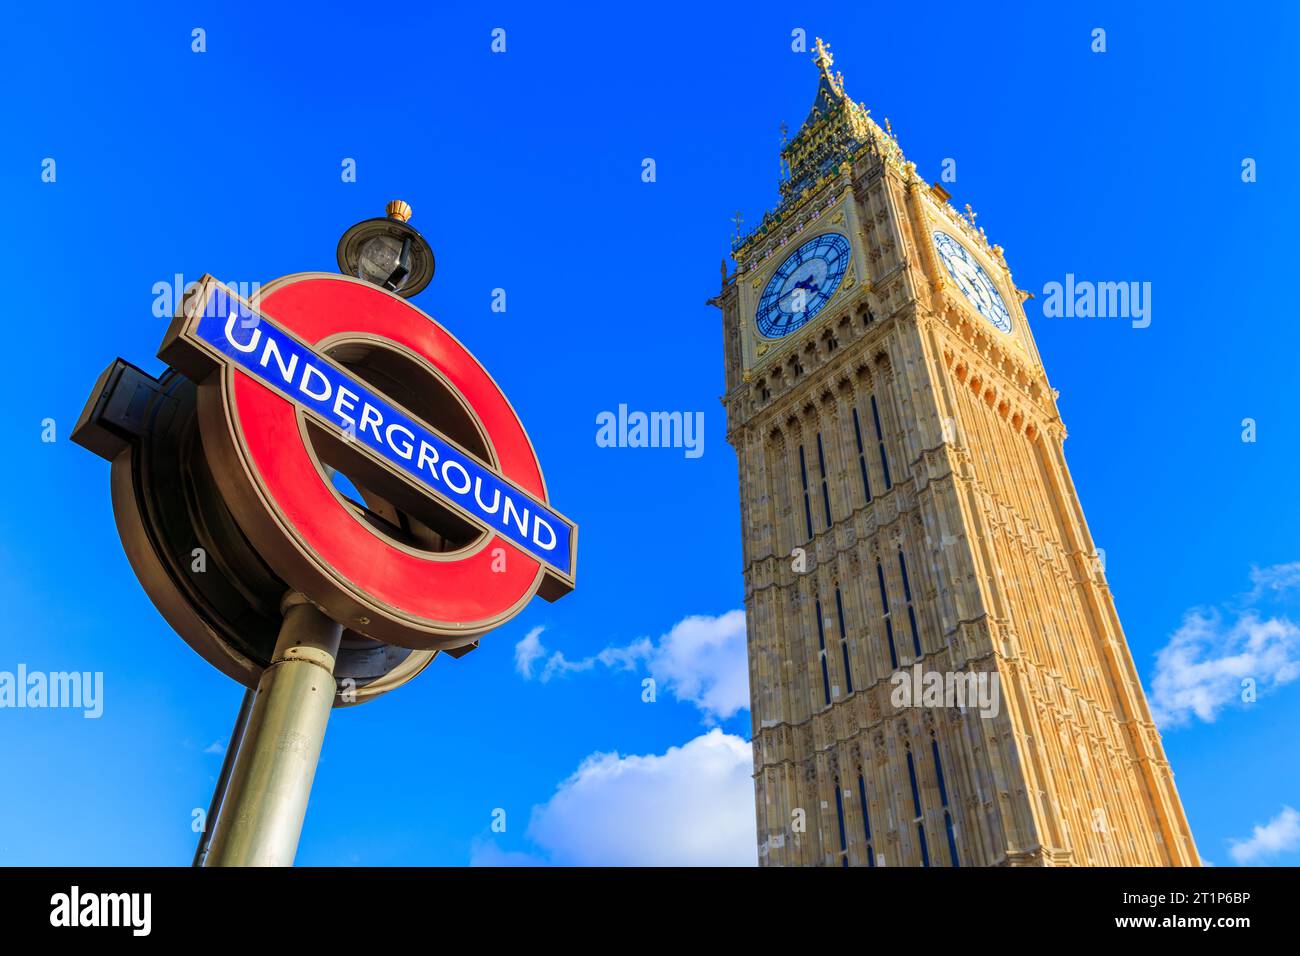 Londres, Angleterre, Royaume-Uni - 14 mars 2023 : la tour de l'horloge Big Ben et le panneau du métro de Londres. Banque D'Images